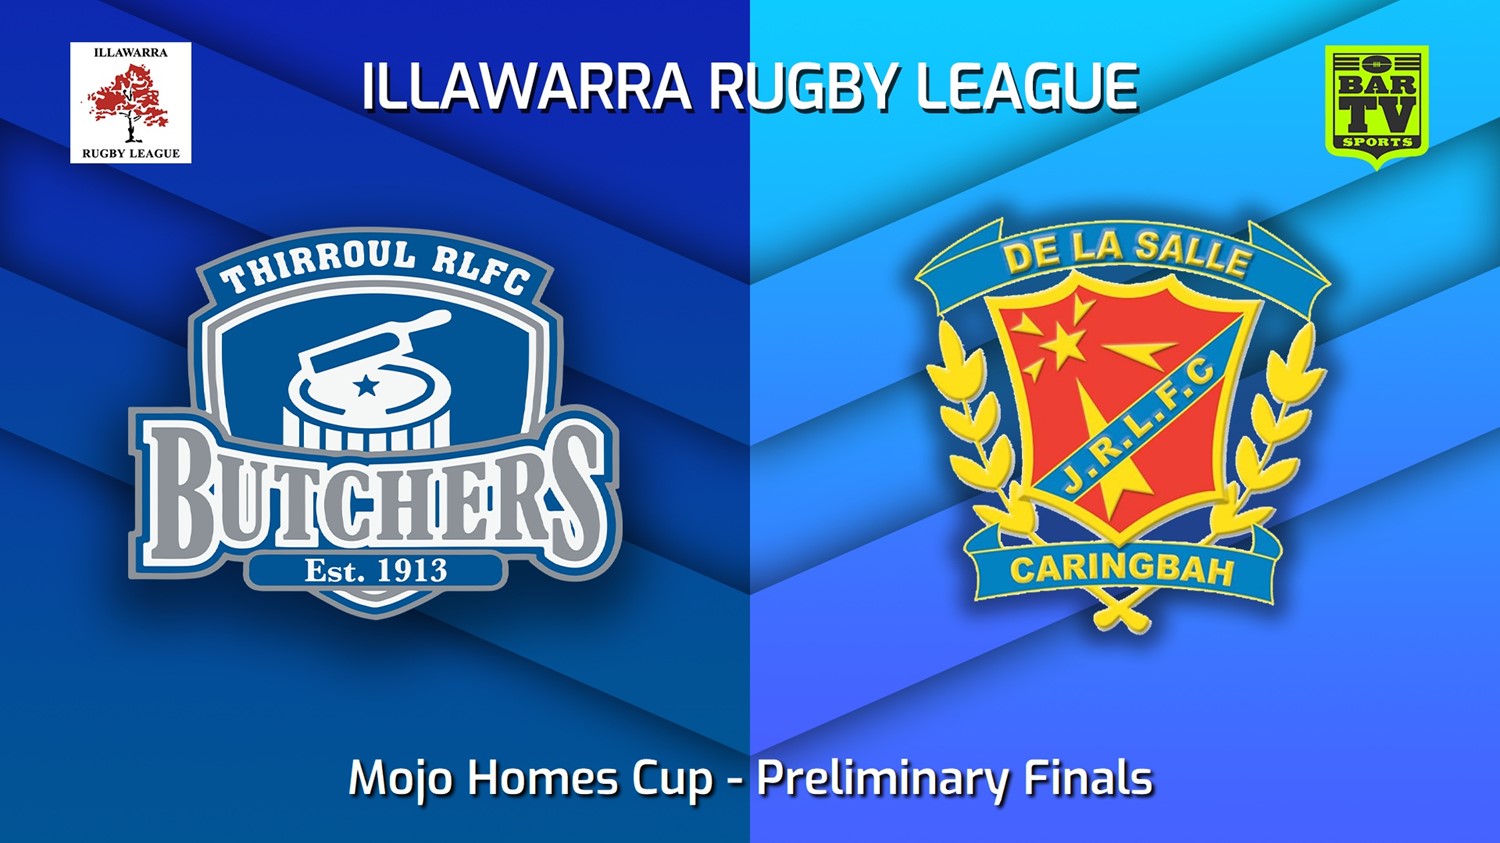 230826-Illawarra Preliminary Finals - Mojo Homes Cup - Thirroul Butchers v De La Salle Minigame Slate Image